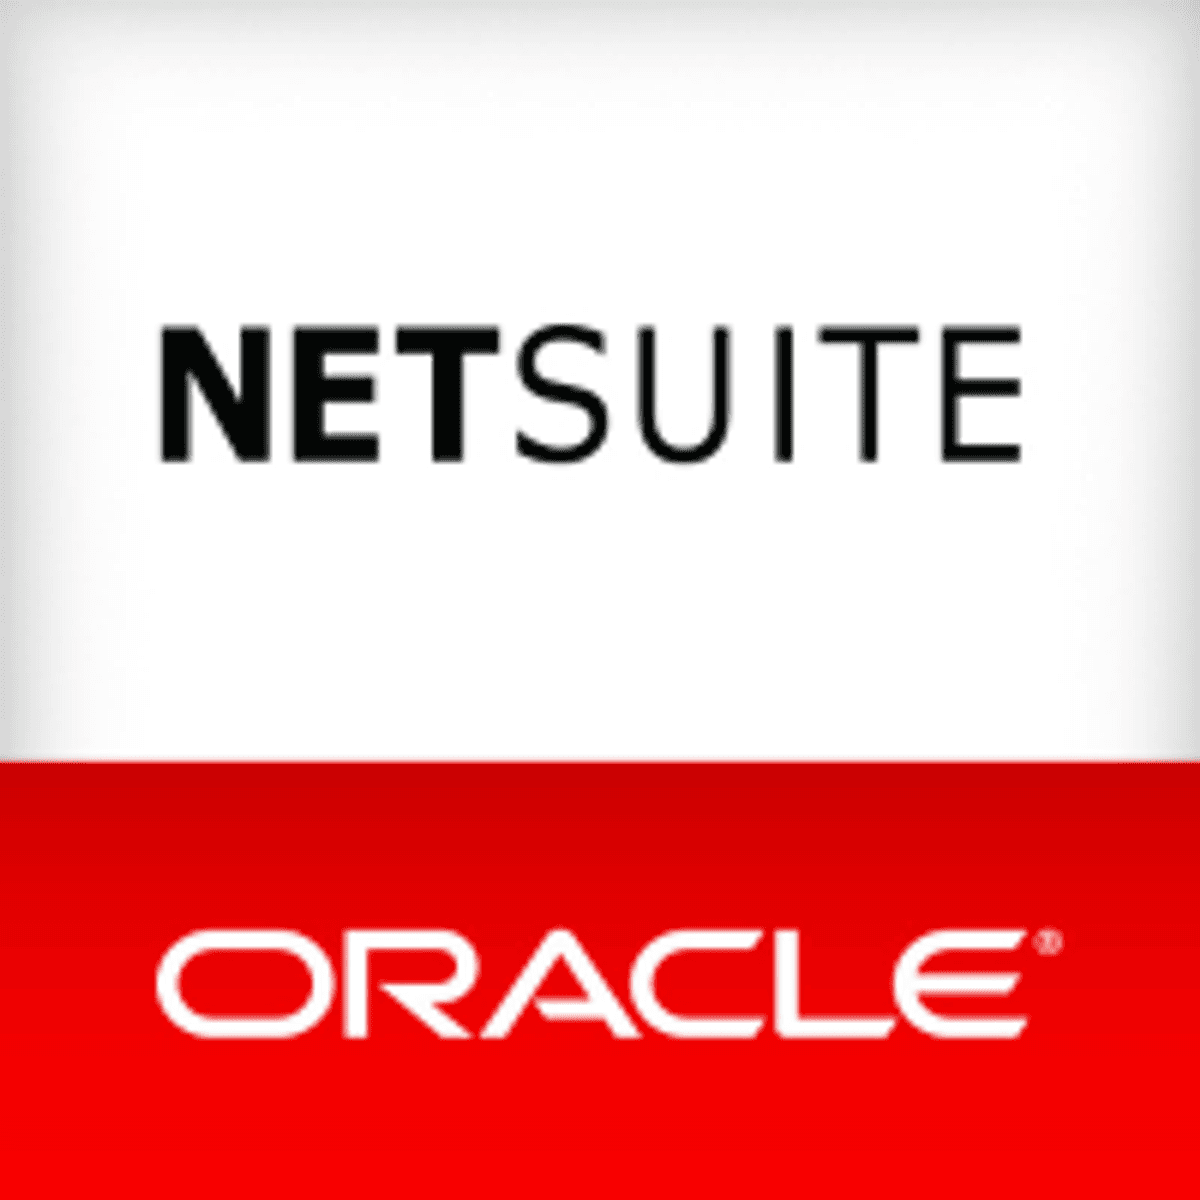 Oracle NetSuite kondigt nieuwe product innovaties aan image